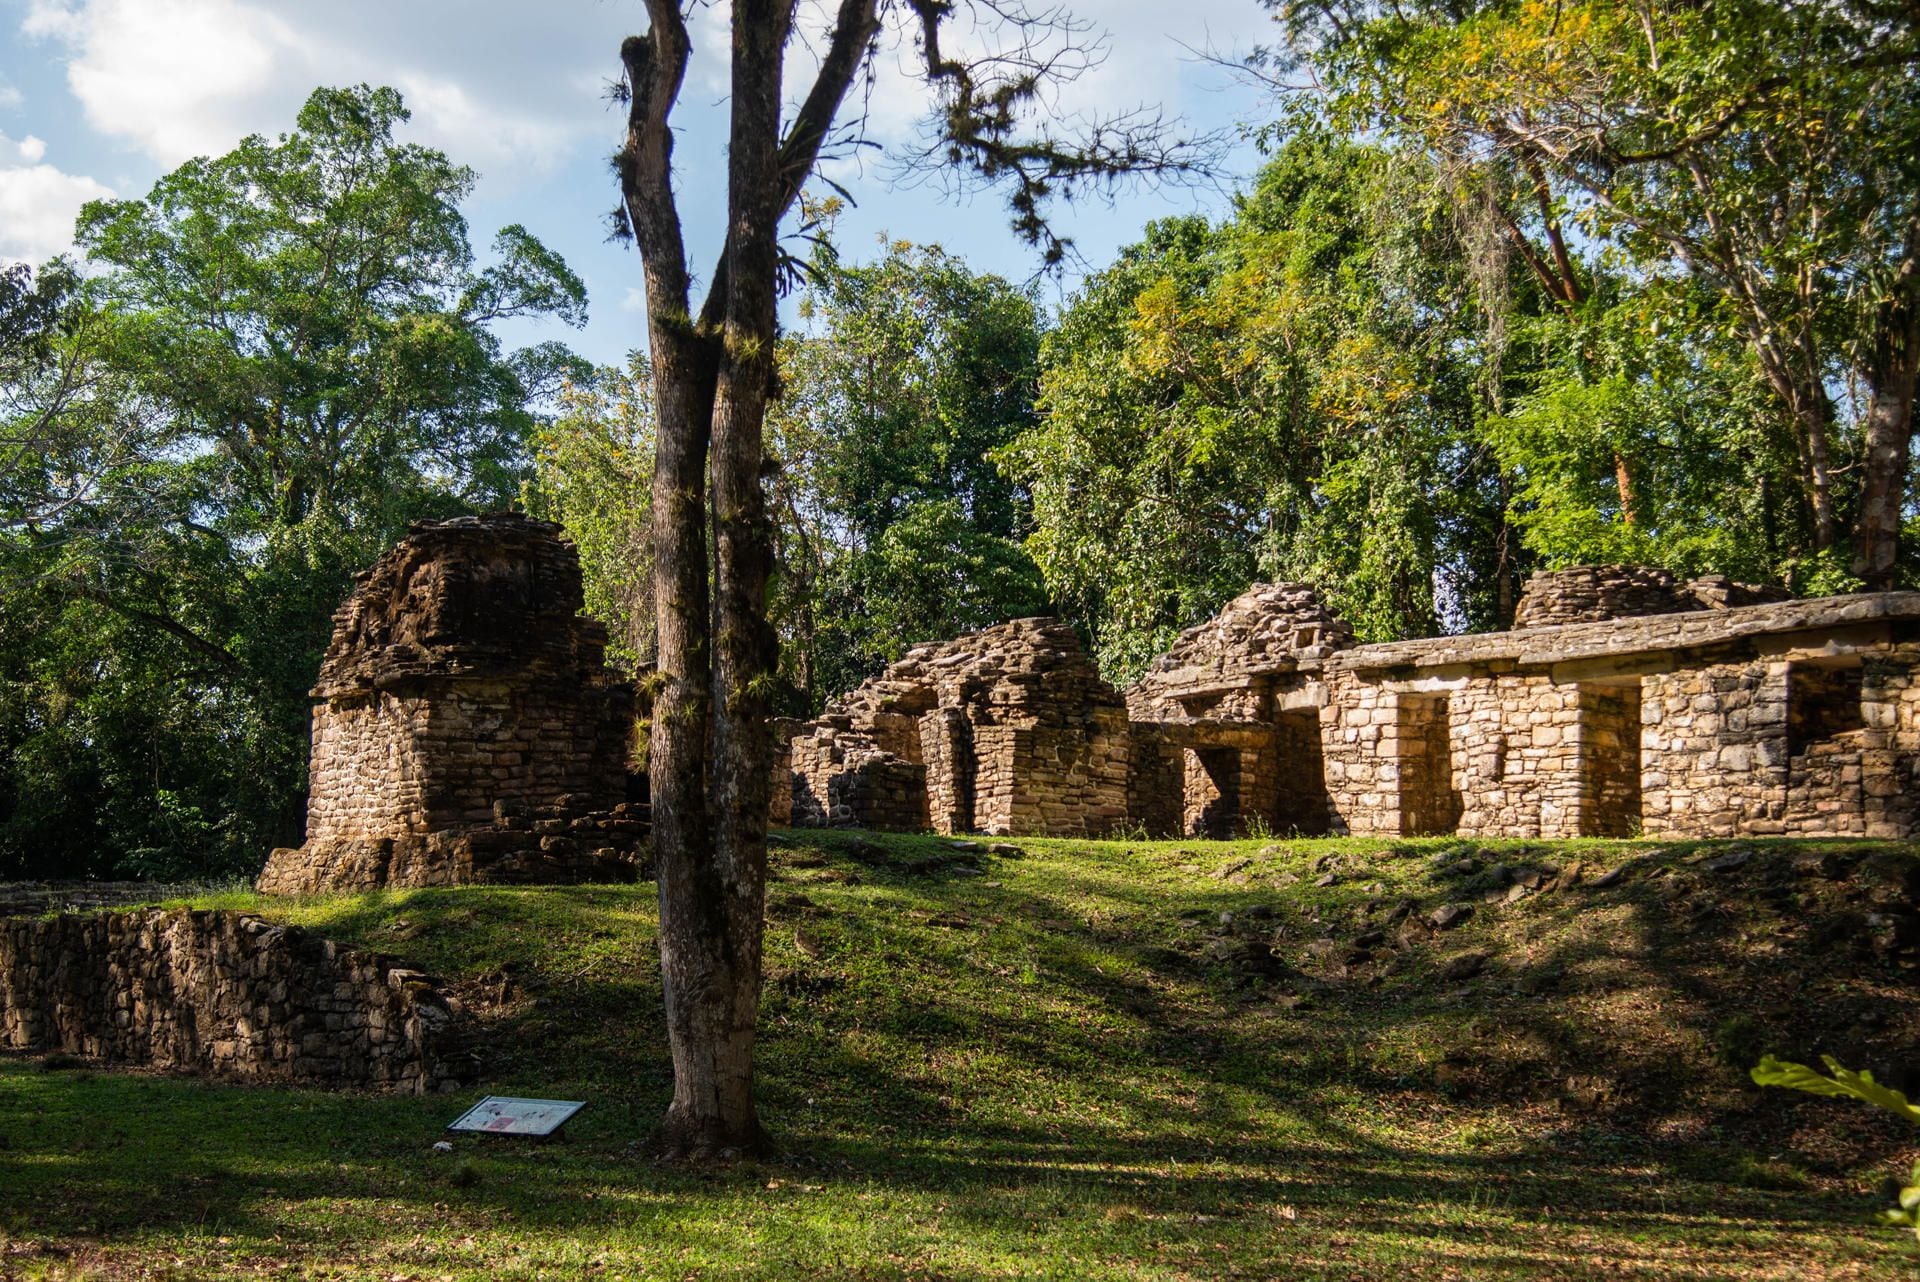 Los pobladores de Frontera Corozal, en 
Ocosingo, reabrieron la zona arqueológica de Yaxchilán y dos centros ecoturísticos.